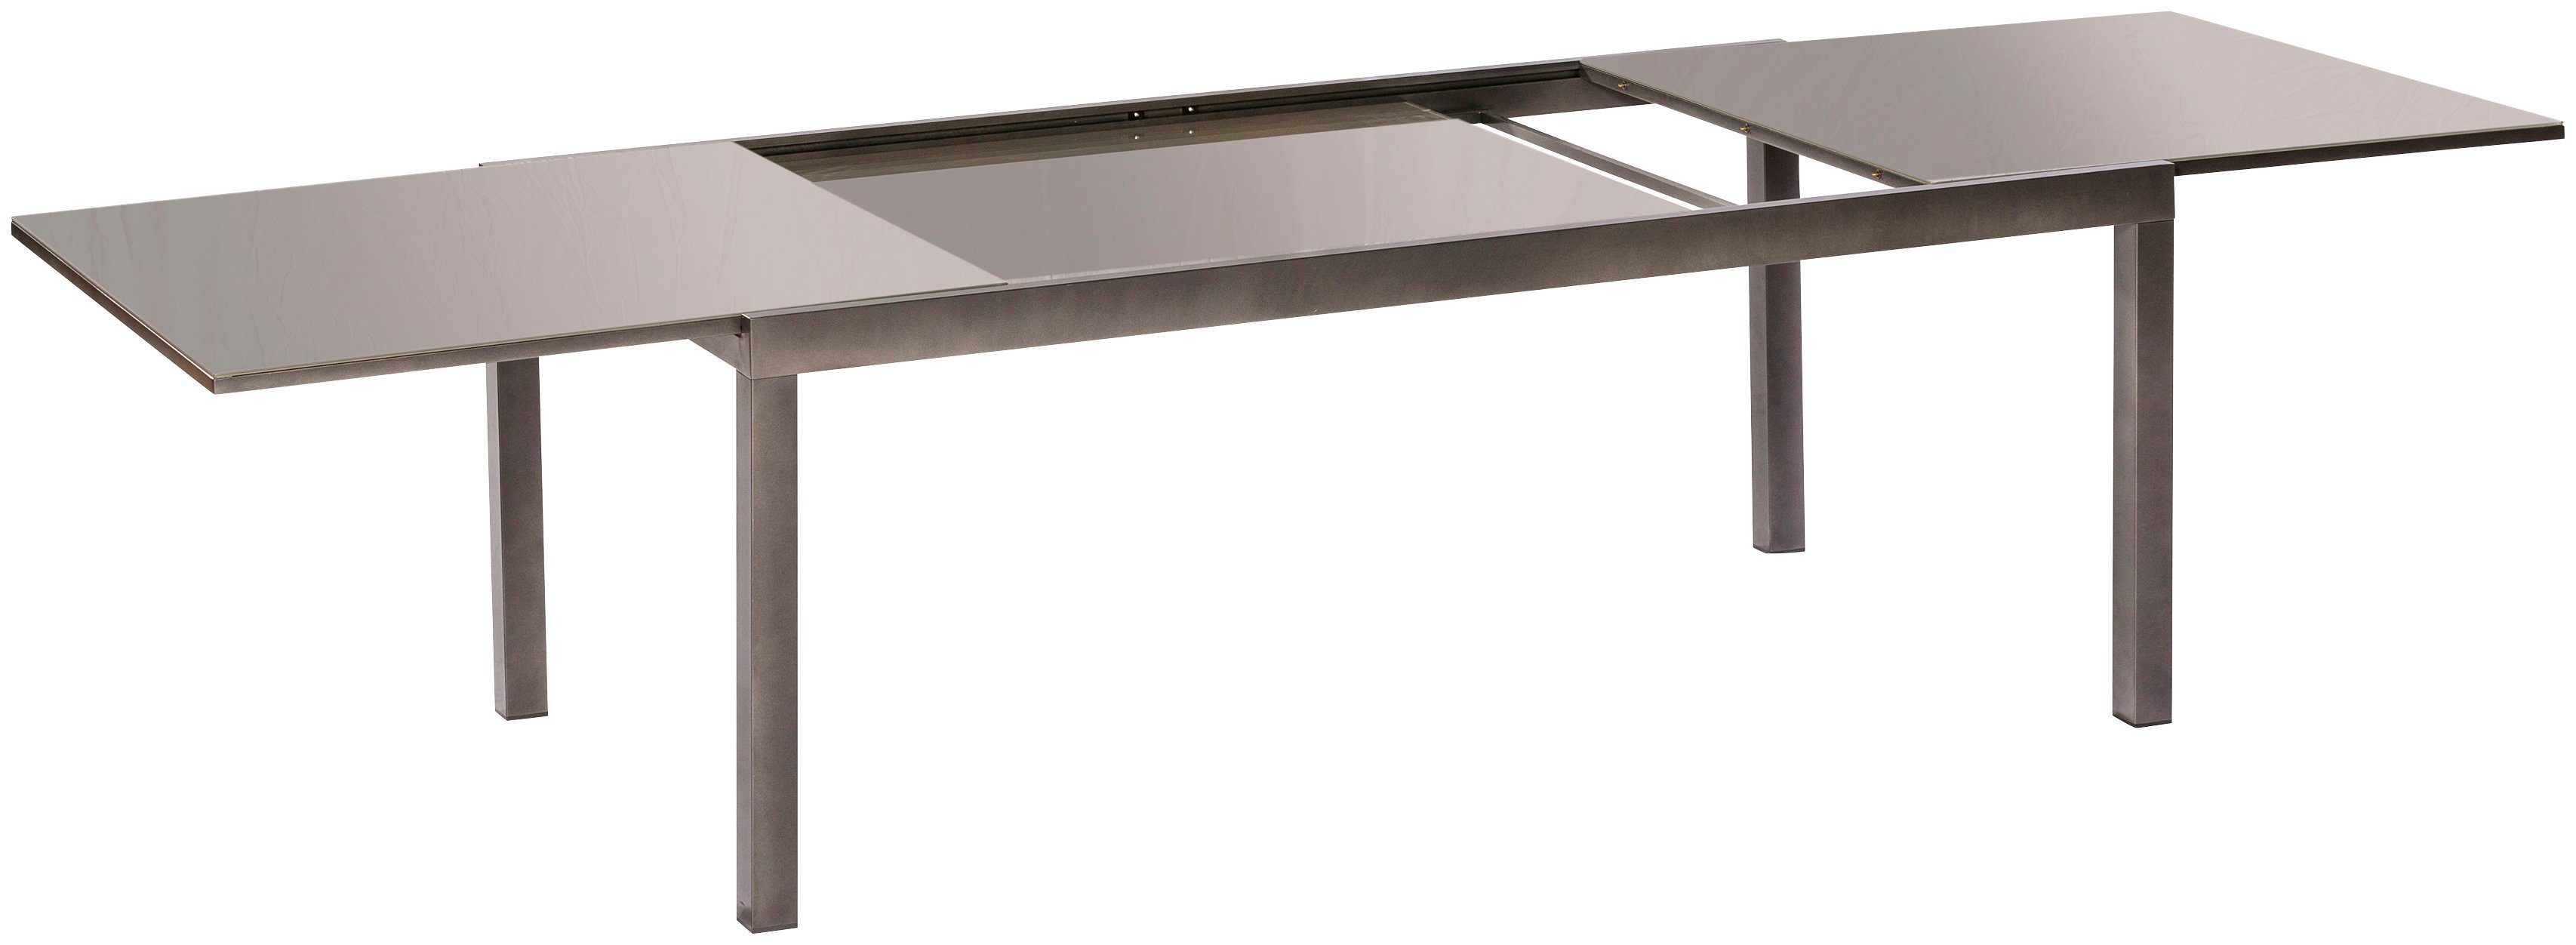 Semi AZ-Tisch, MERXX cm 110x220 Gartentisch